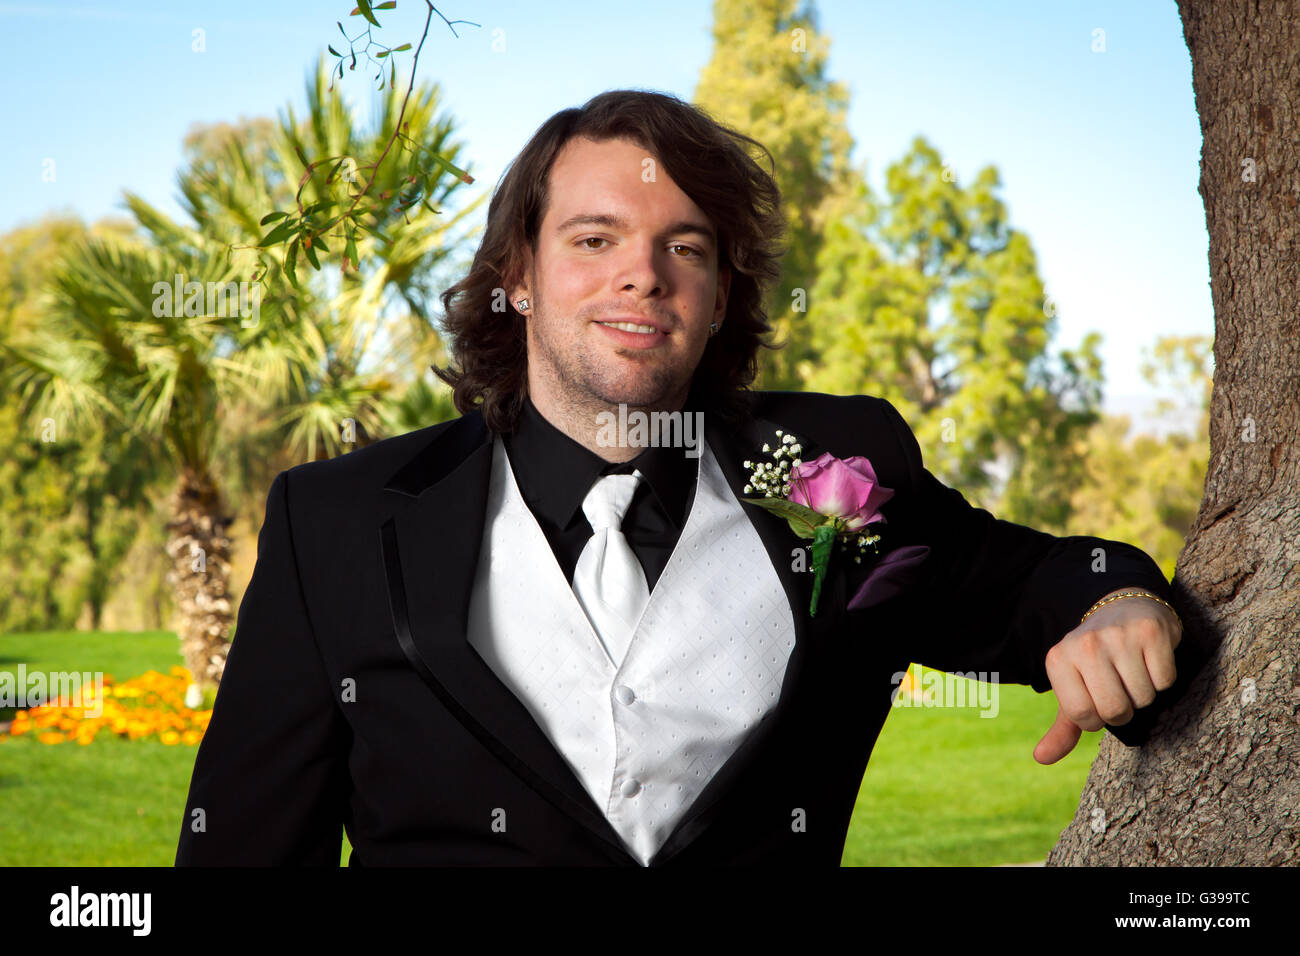 Un novio se inclina sobre un árbol en su día de la boda. Él tiene una rosa rosa arreglo floral para la solapa del novio y un chaleco blanco y corbata. Foto de stock